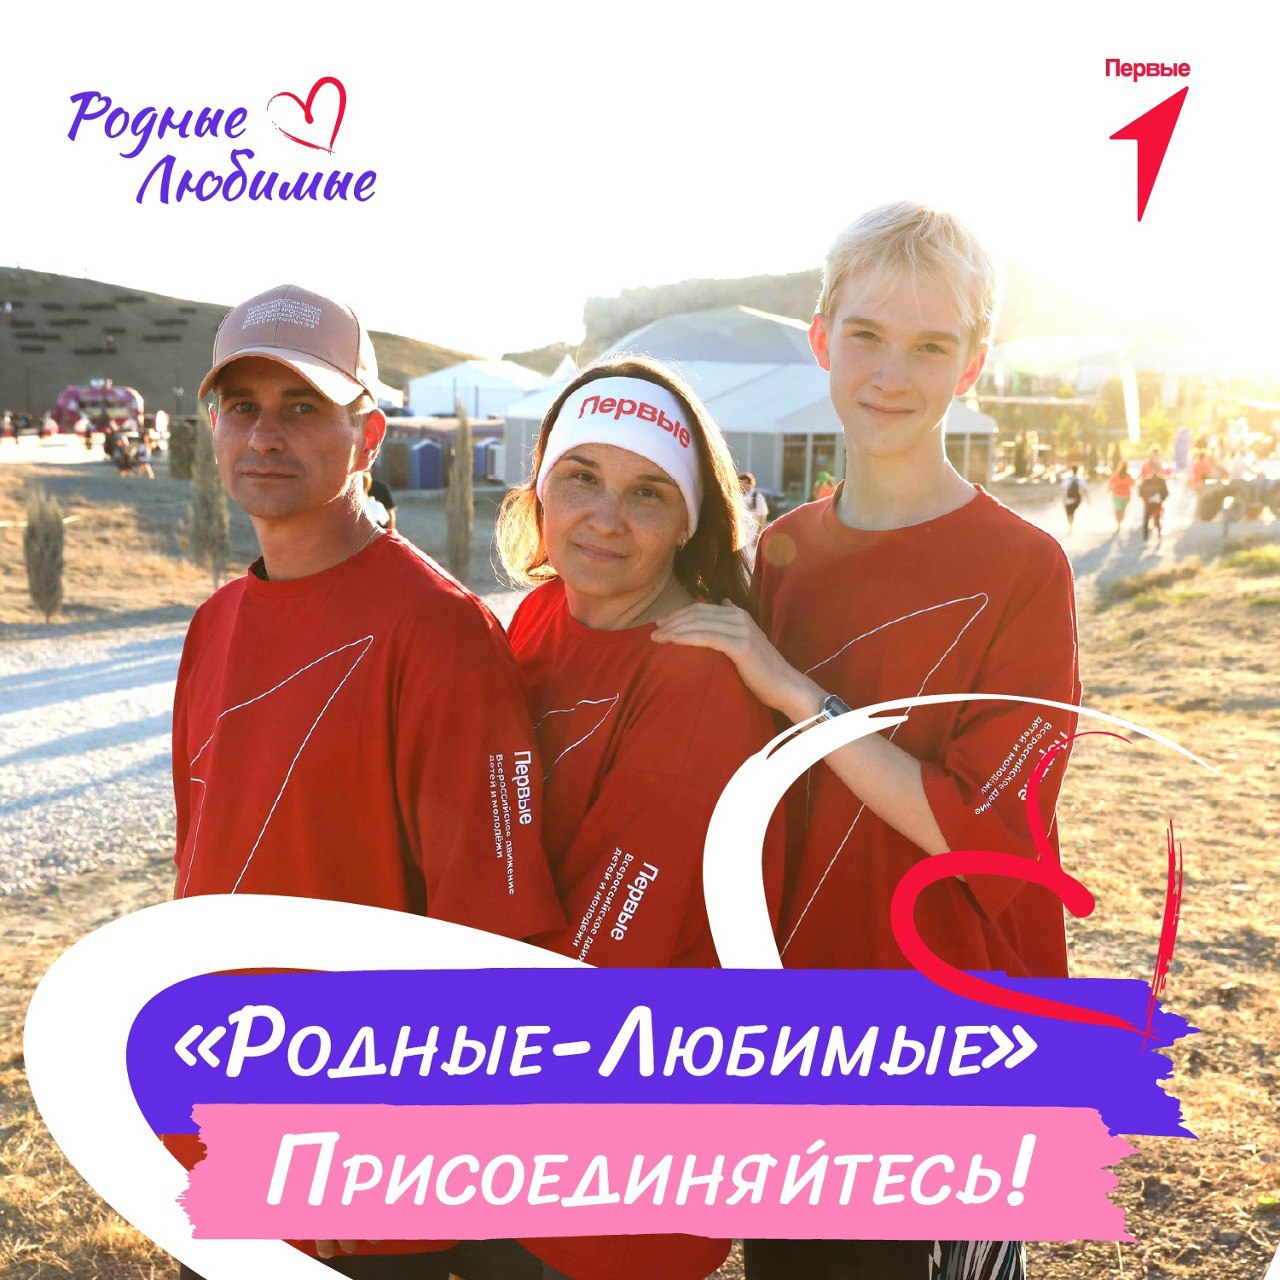 Сегодня — последняя возможность стать участником Всероссийского семейного форума «Родные-Любимые»!